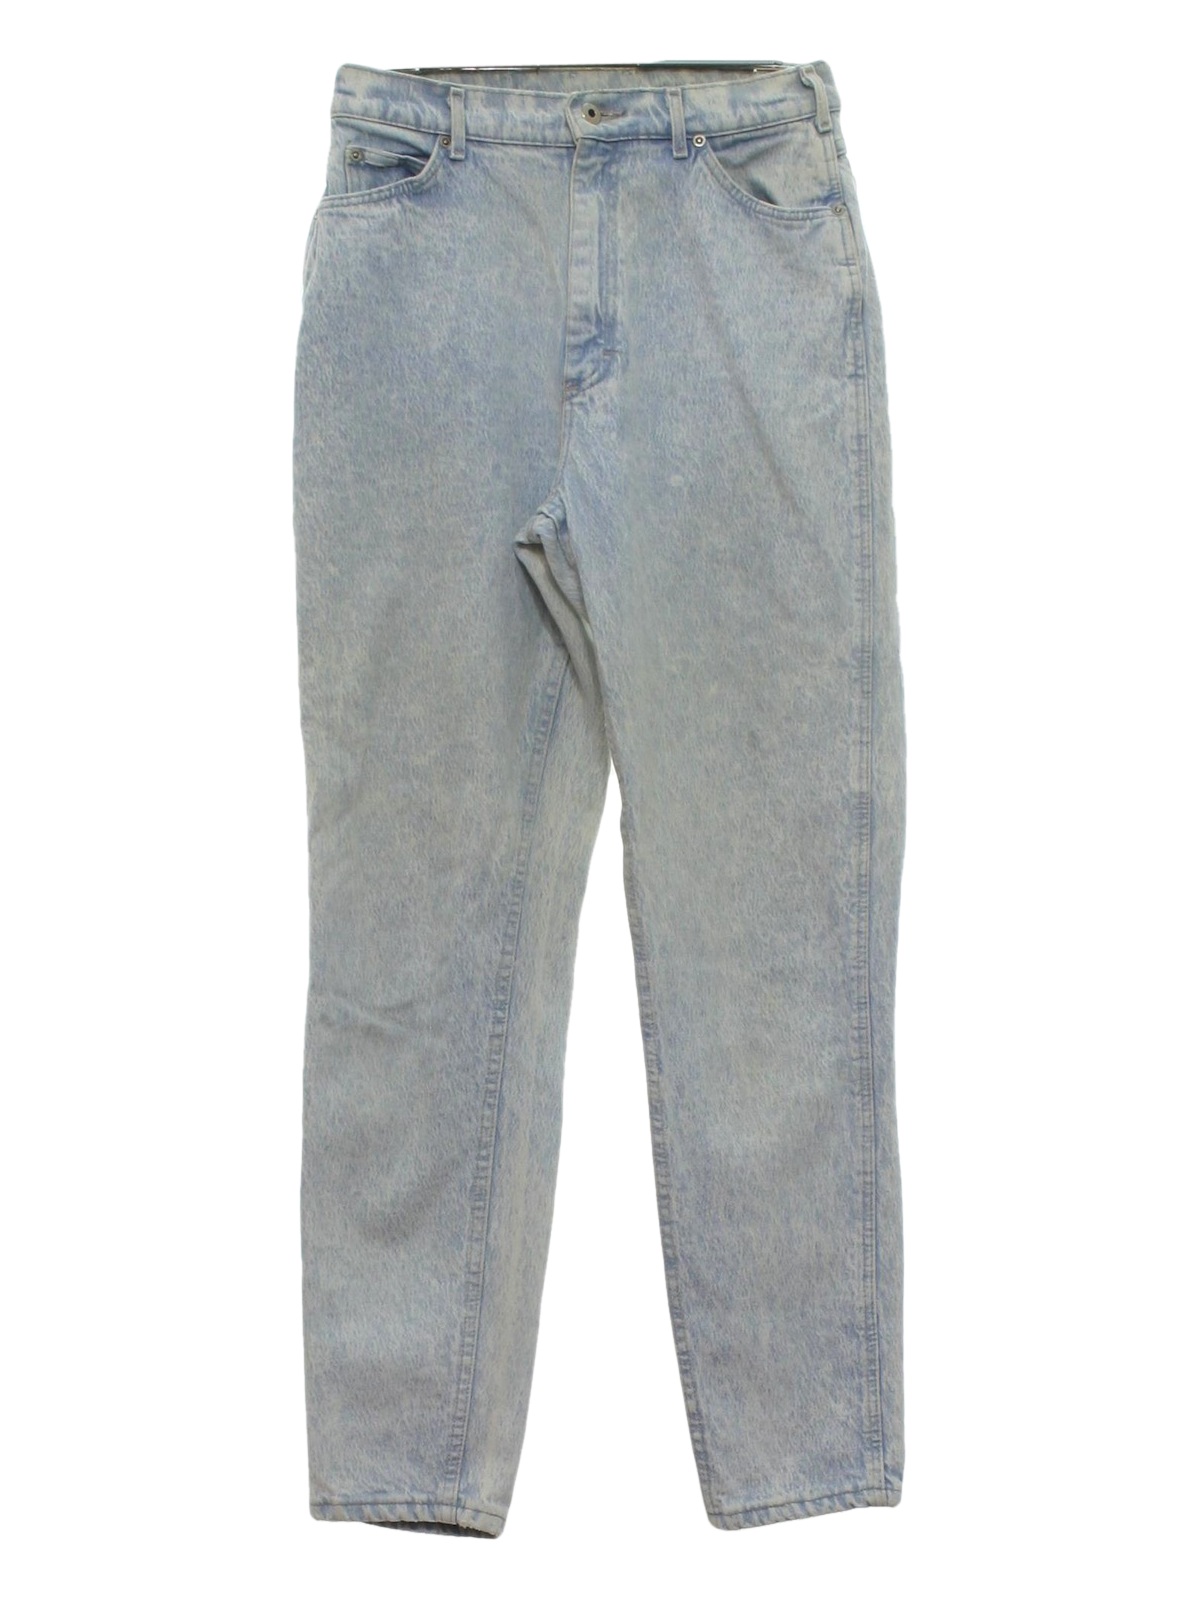 Vintage 80s Pants: 80s -Lee- Womens light blue background acid washed ...